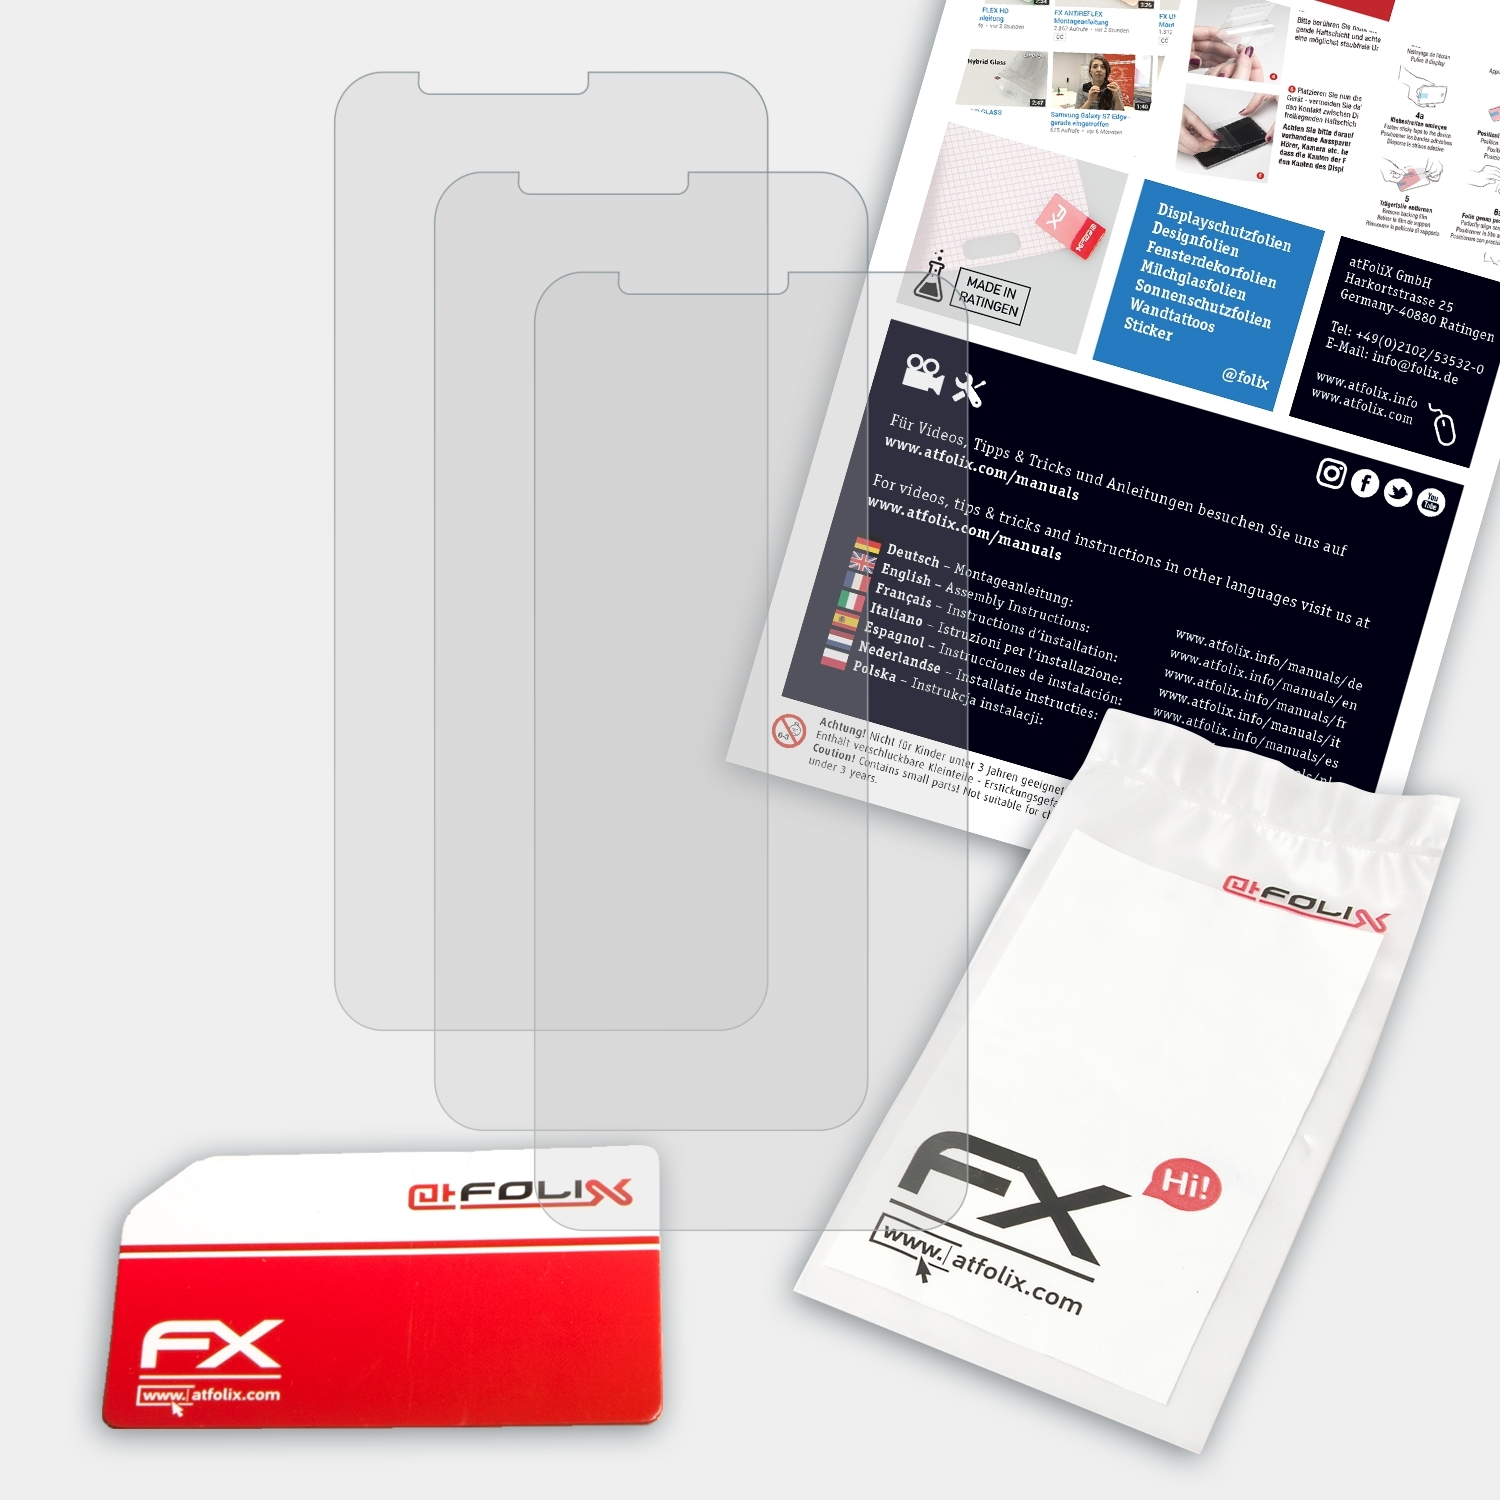 FX-Antireflex ATFOLIX 3x 7X) Displayschutz(für Huawei Honor